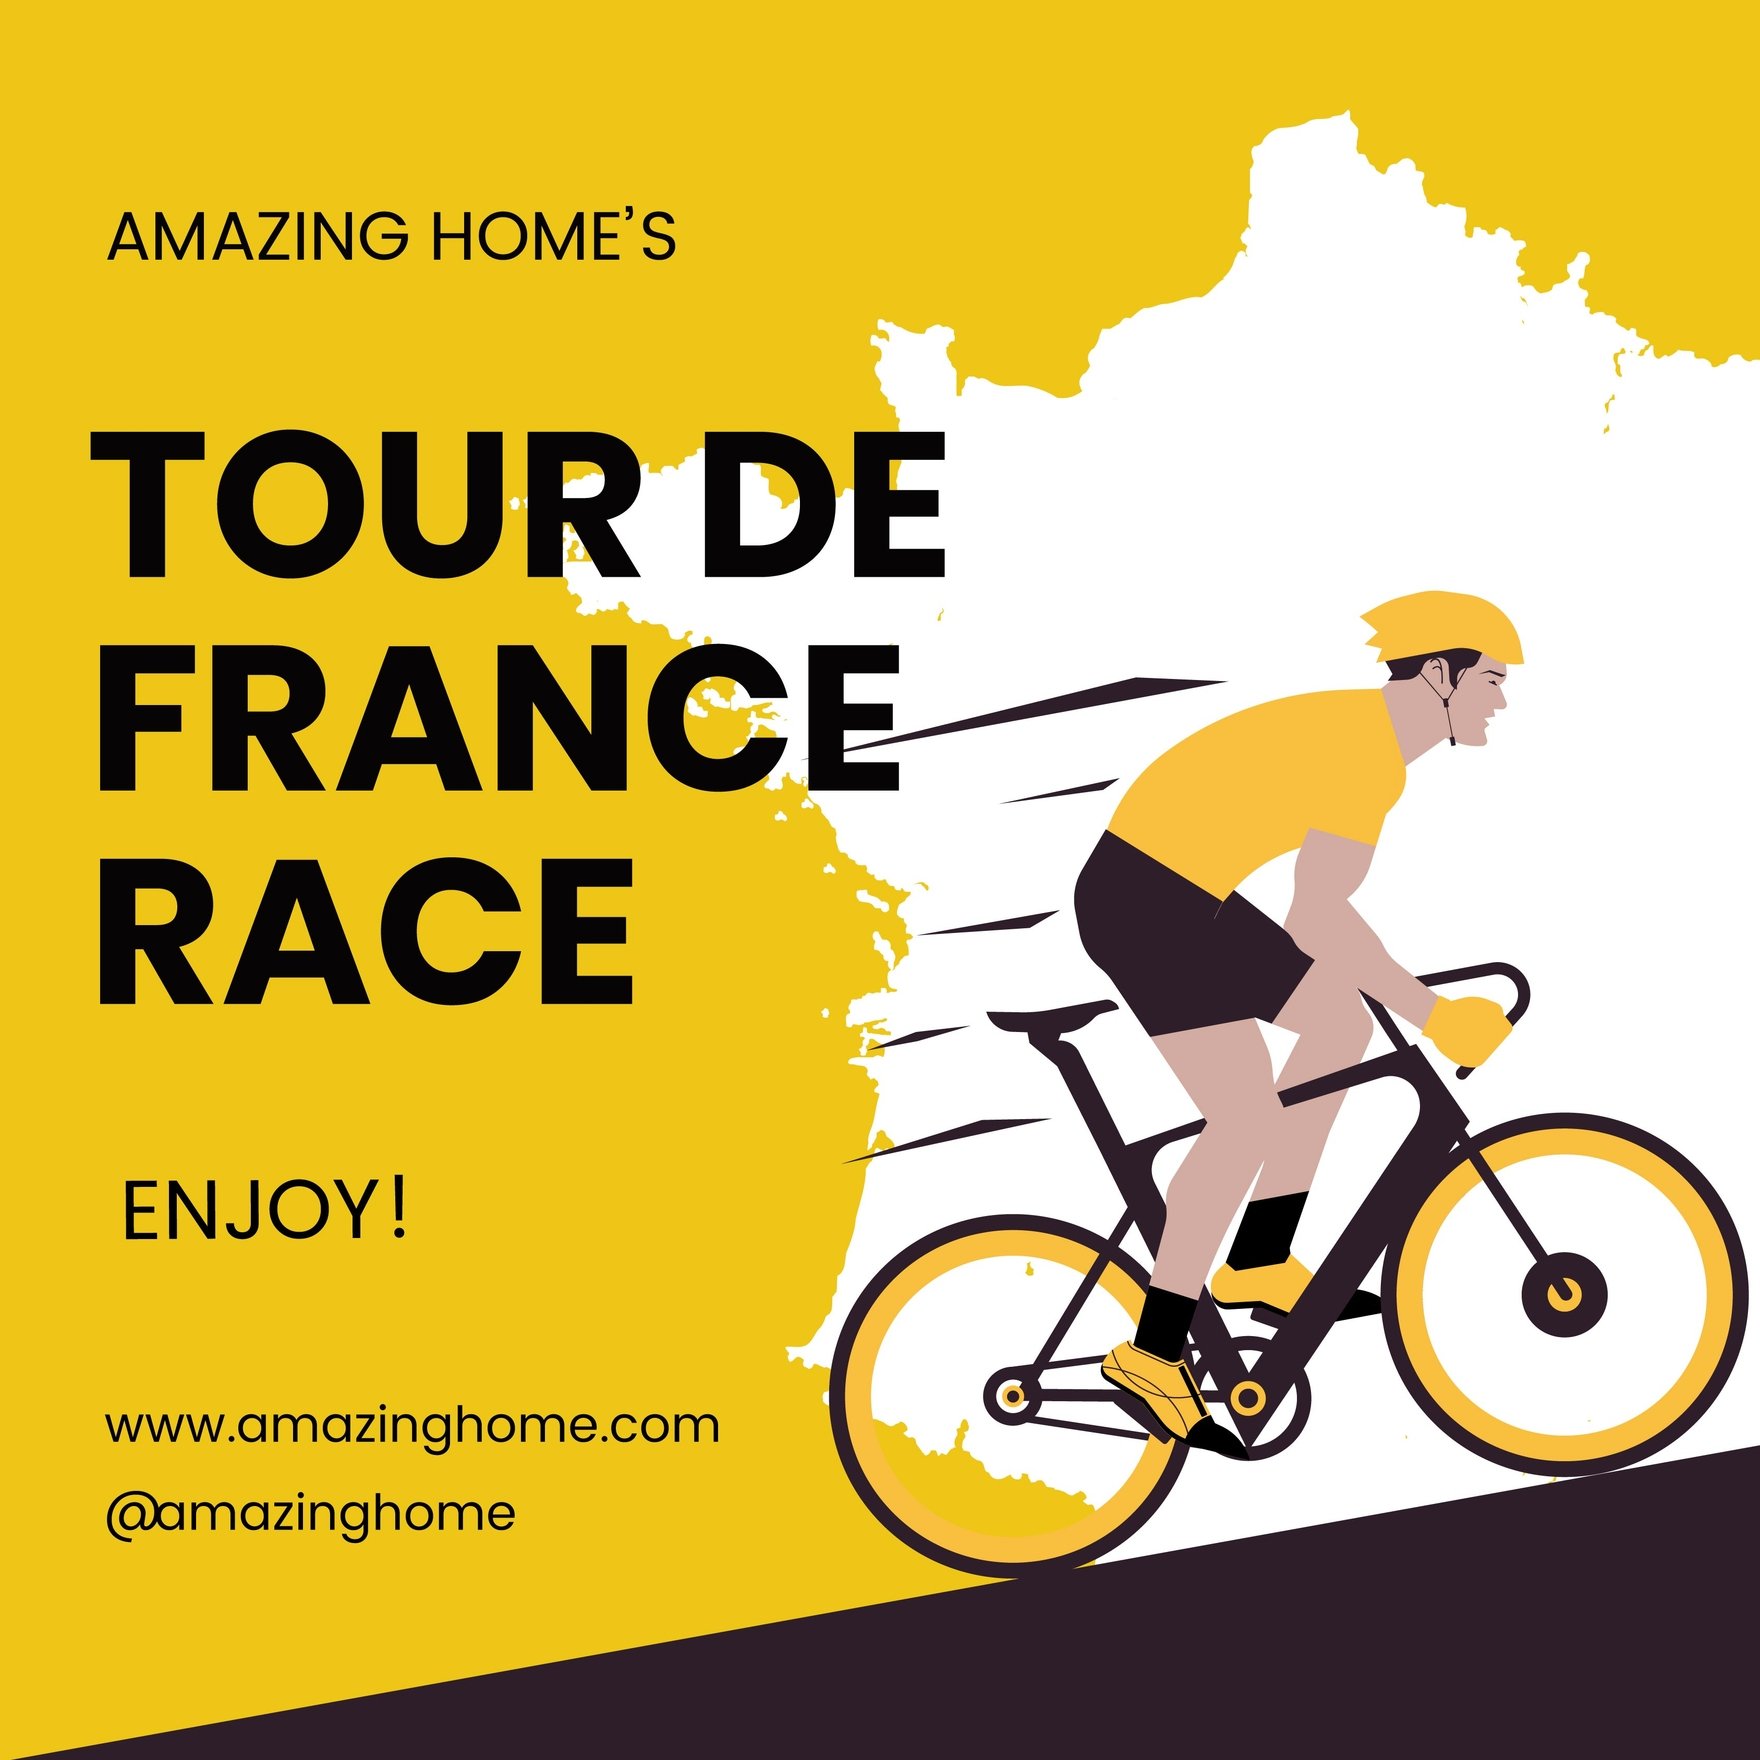 Free Tour de France Instagram Post in Illustrator, PSD, EPS, SVG, PNG, JPEG